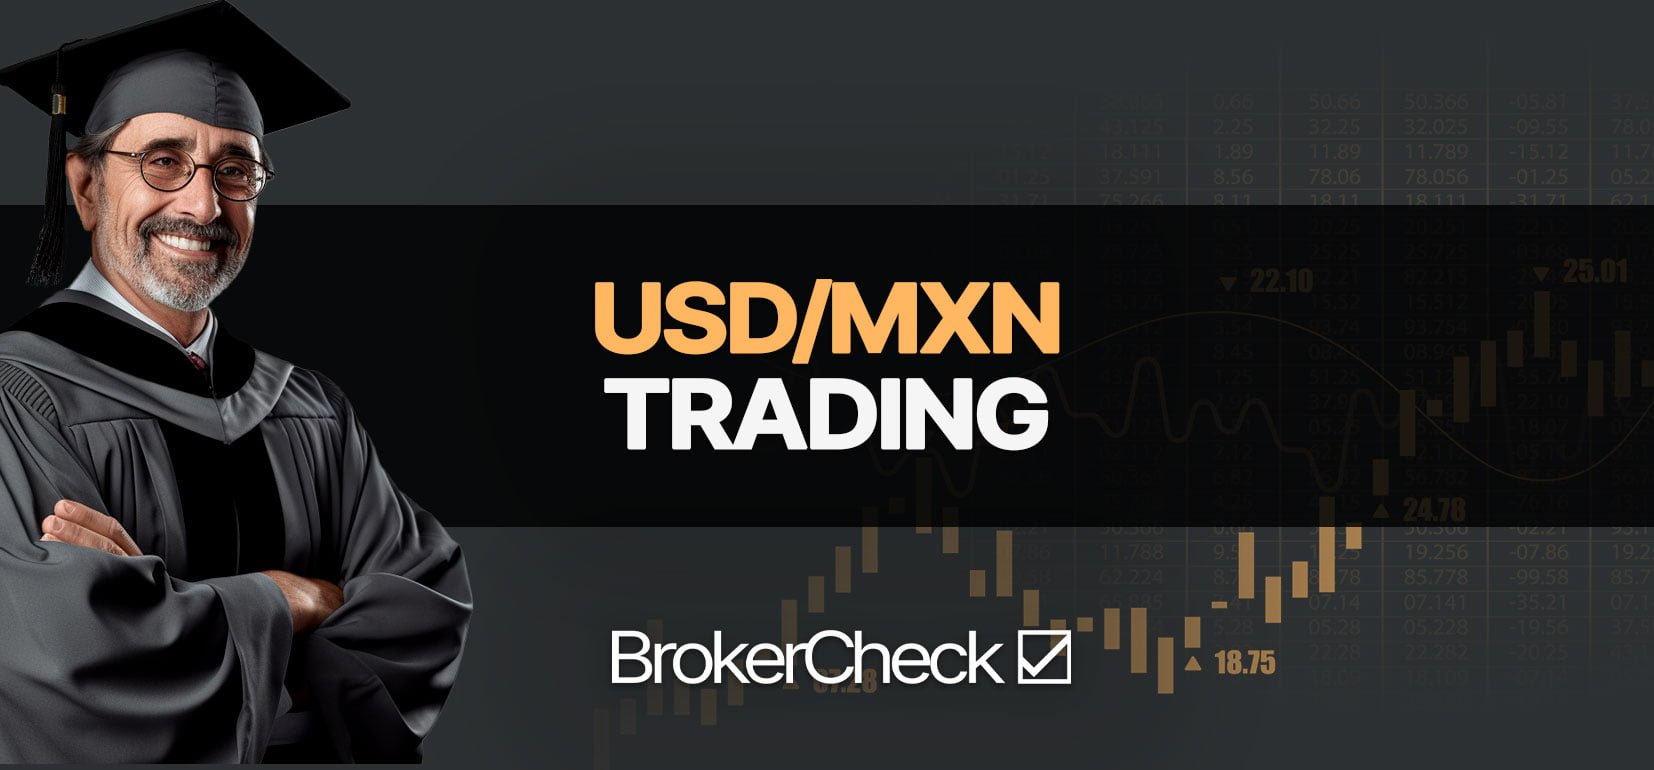 Como Negociar Trade USD/MXN com sucesso